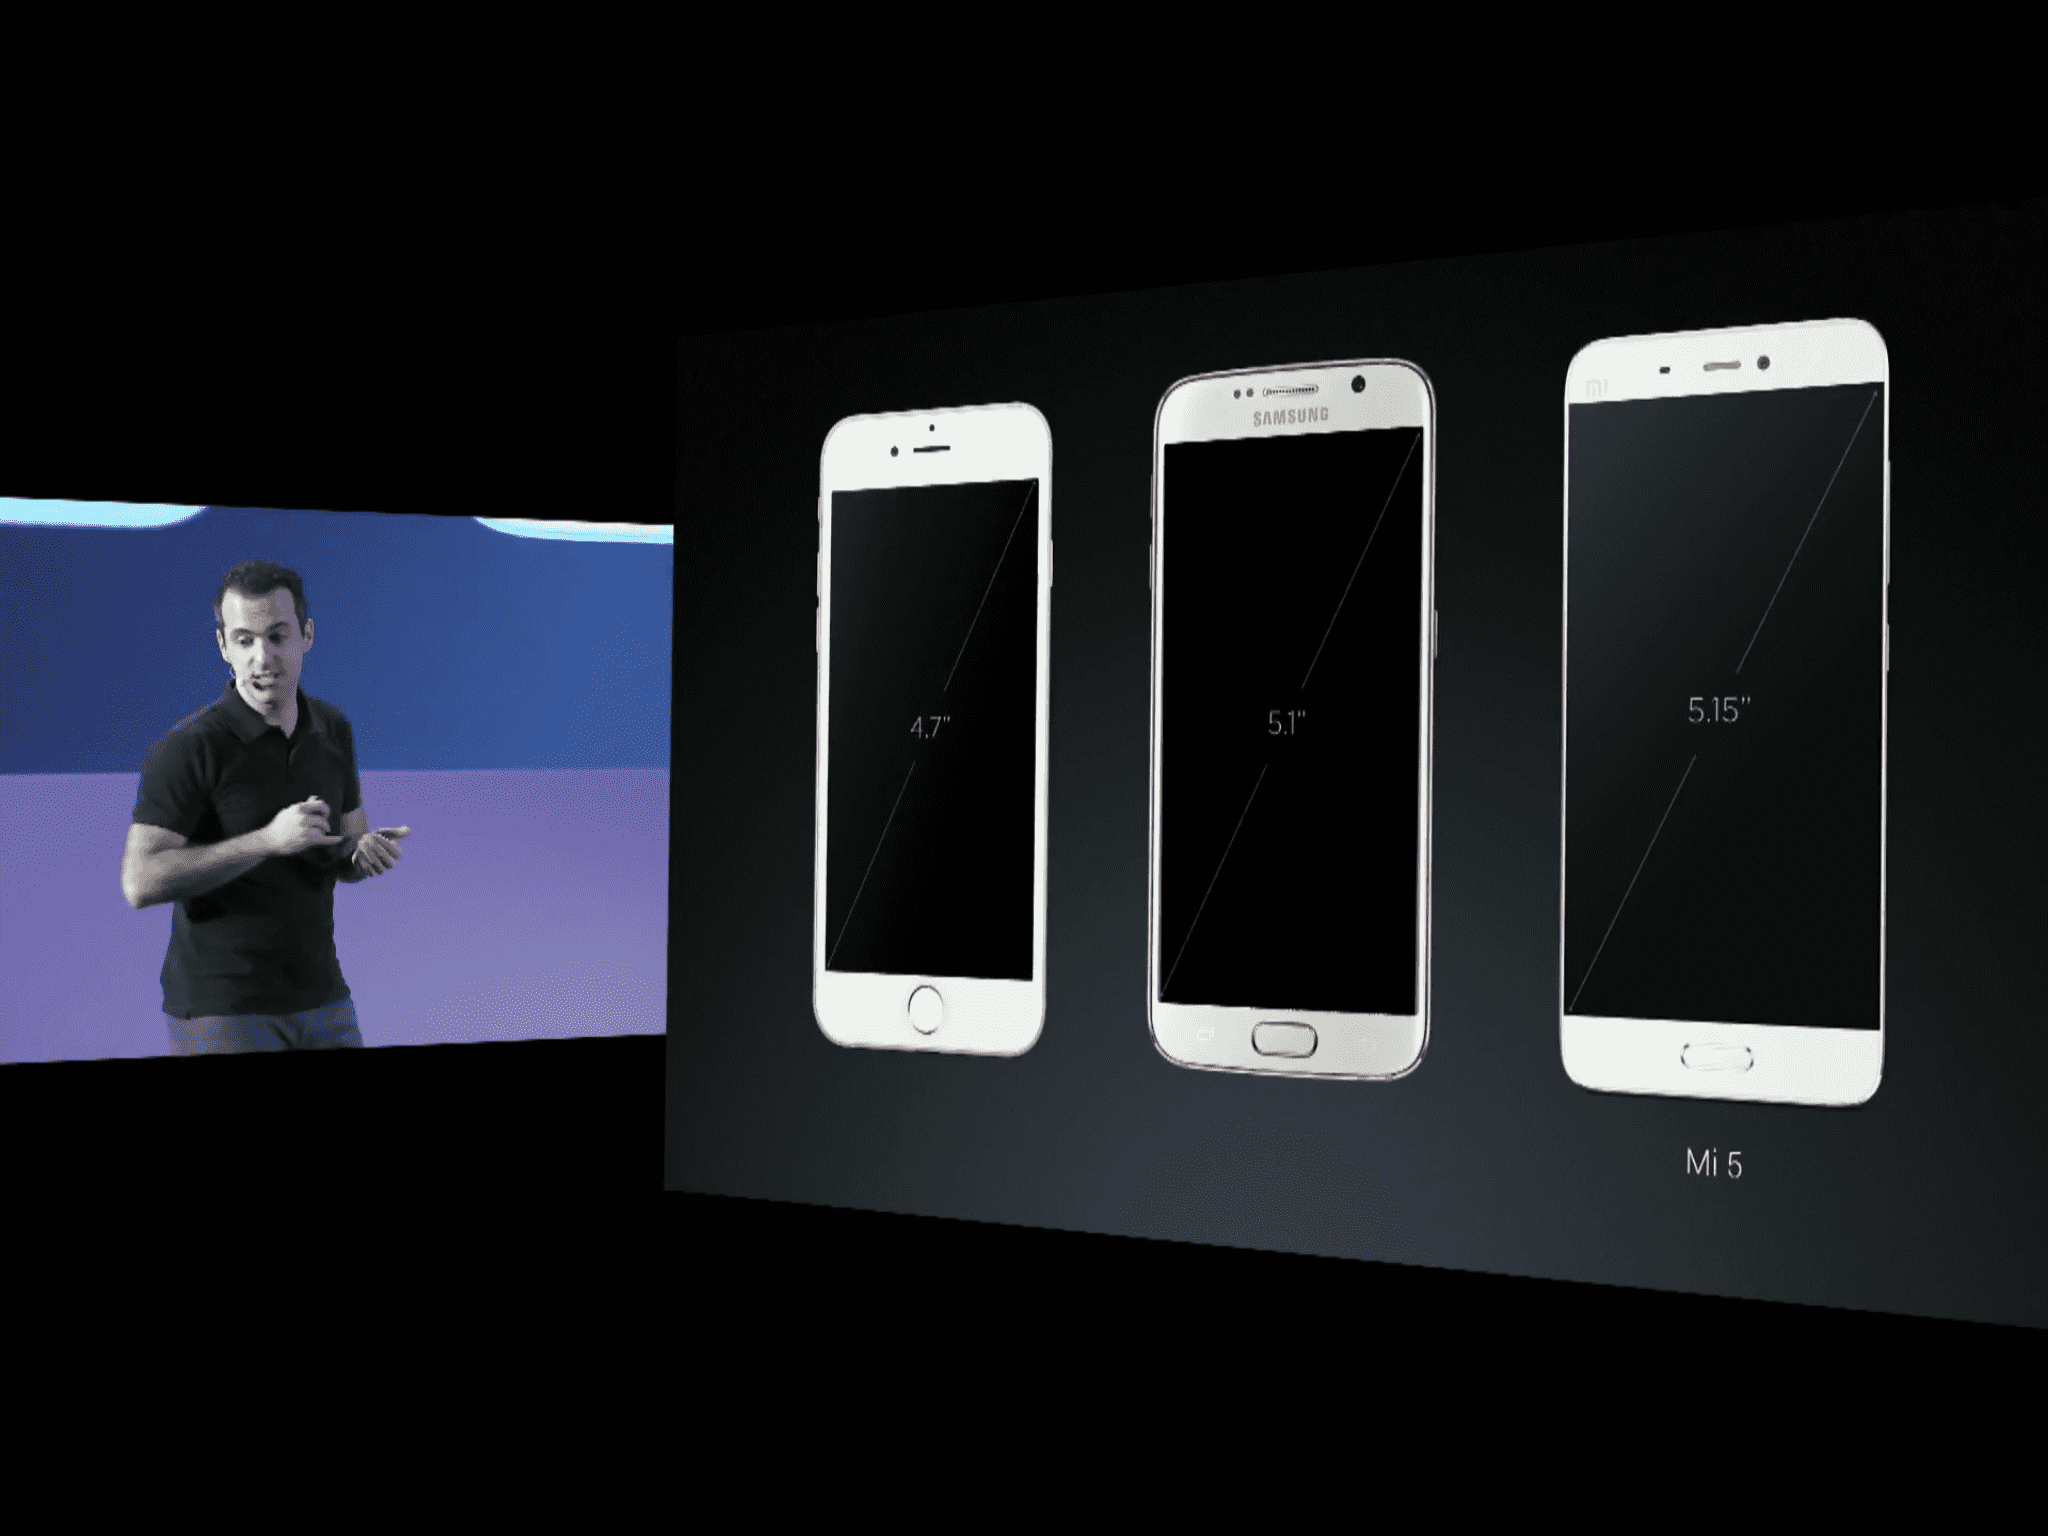 Xiaomi Mi 5 oficjalnie zaprezentowany polecane, ciekawostki Xiaomi Mi 5 specyfikacja, Xiaomi Mi 5, Xiaomi, prezentacja Xiaomi Mi 5, MI5, kiedy premiera Xiaomi Mi 5, cena Xiaomi Mi 5  Dziś rano Xiaomi w końcu zaprezentowało całemu mobilnemu światu najnowszego flagowca Mi 5 podczas targów Mobile World Congress w Barcelonie. IMG 1233